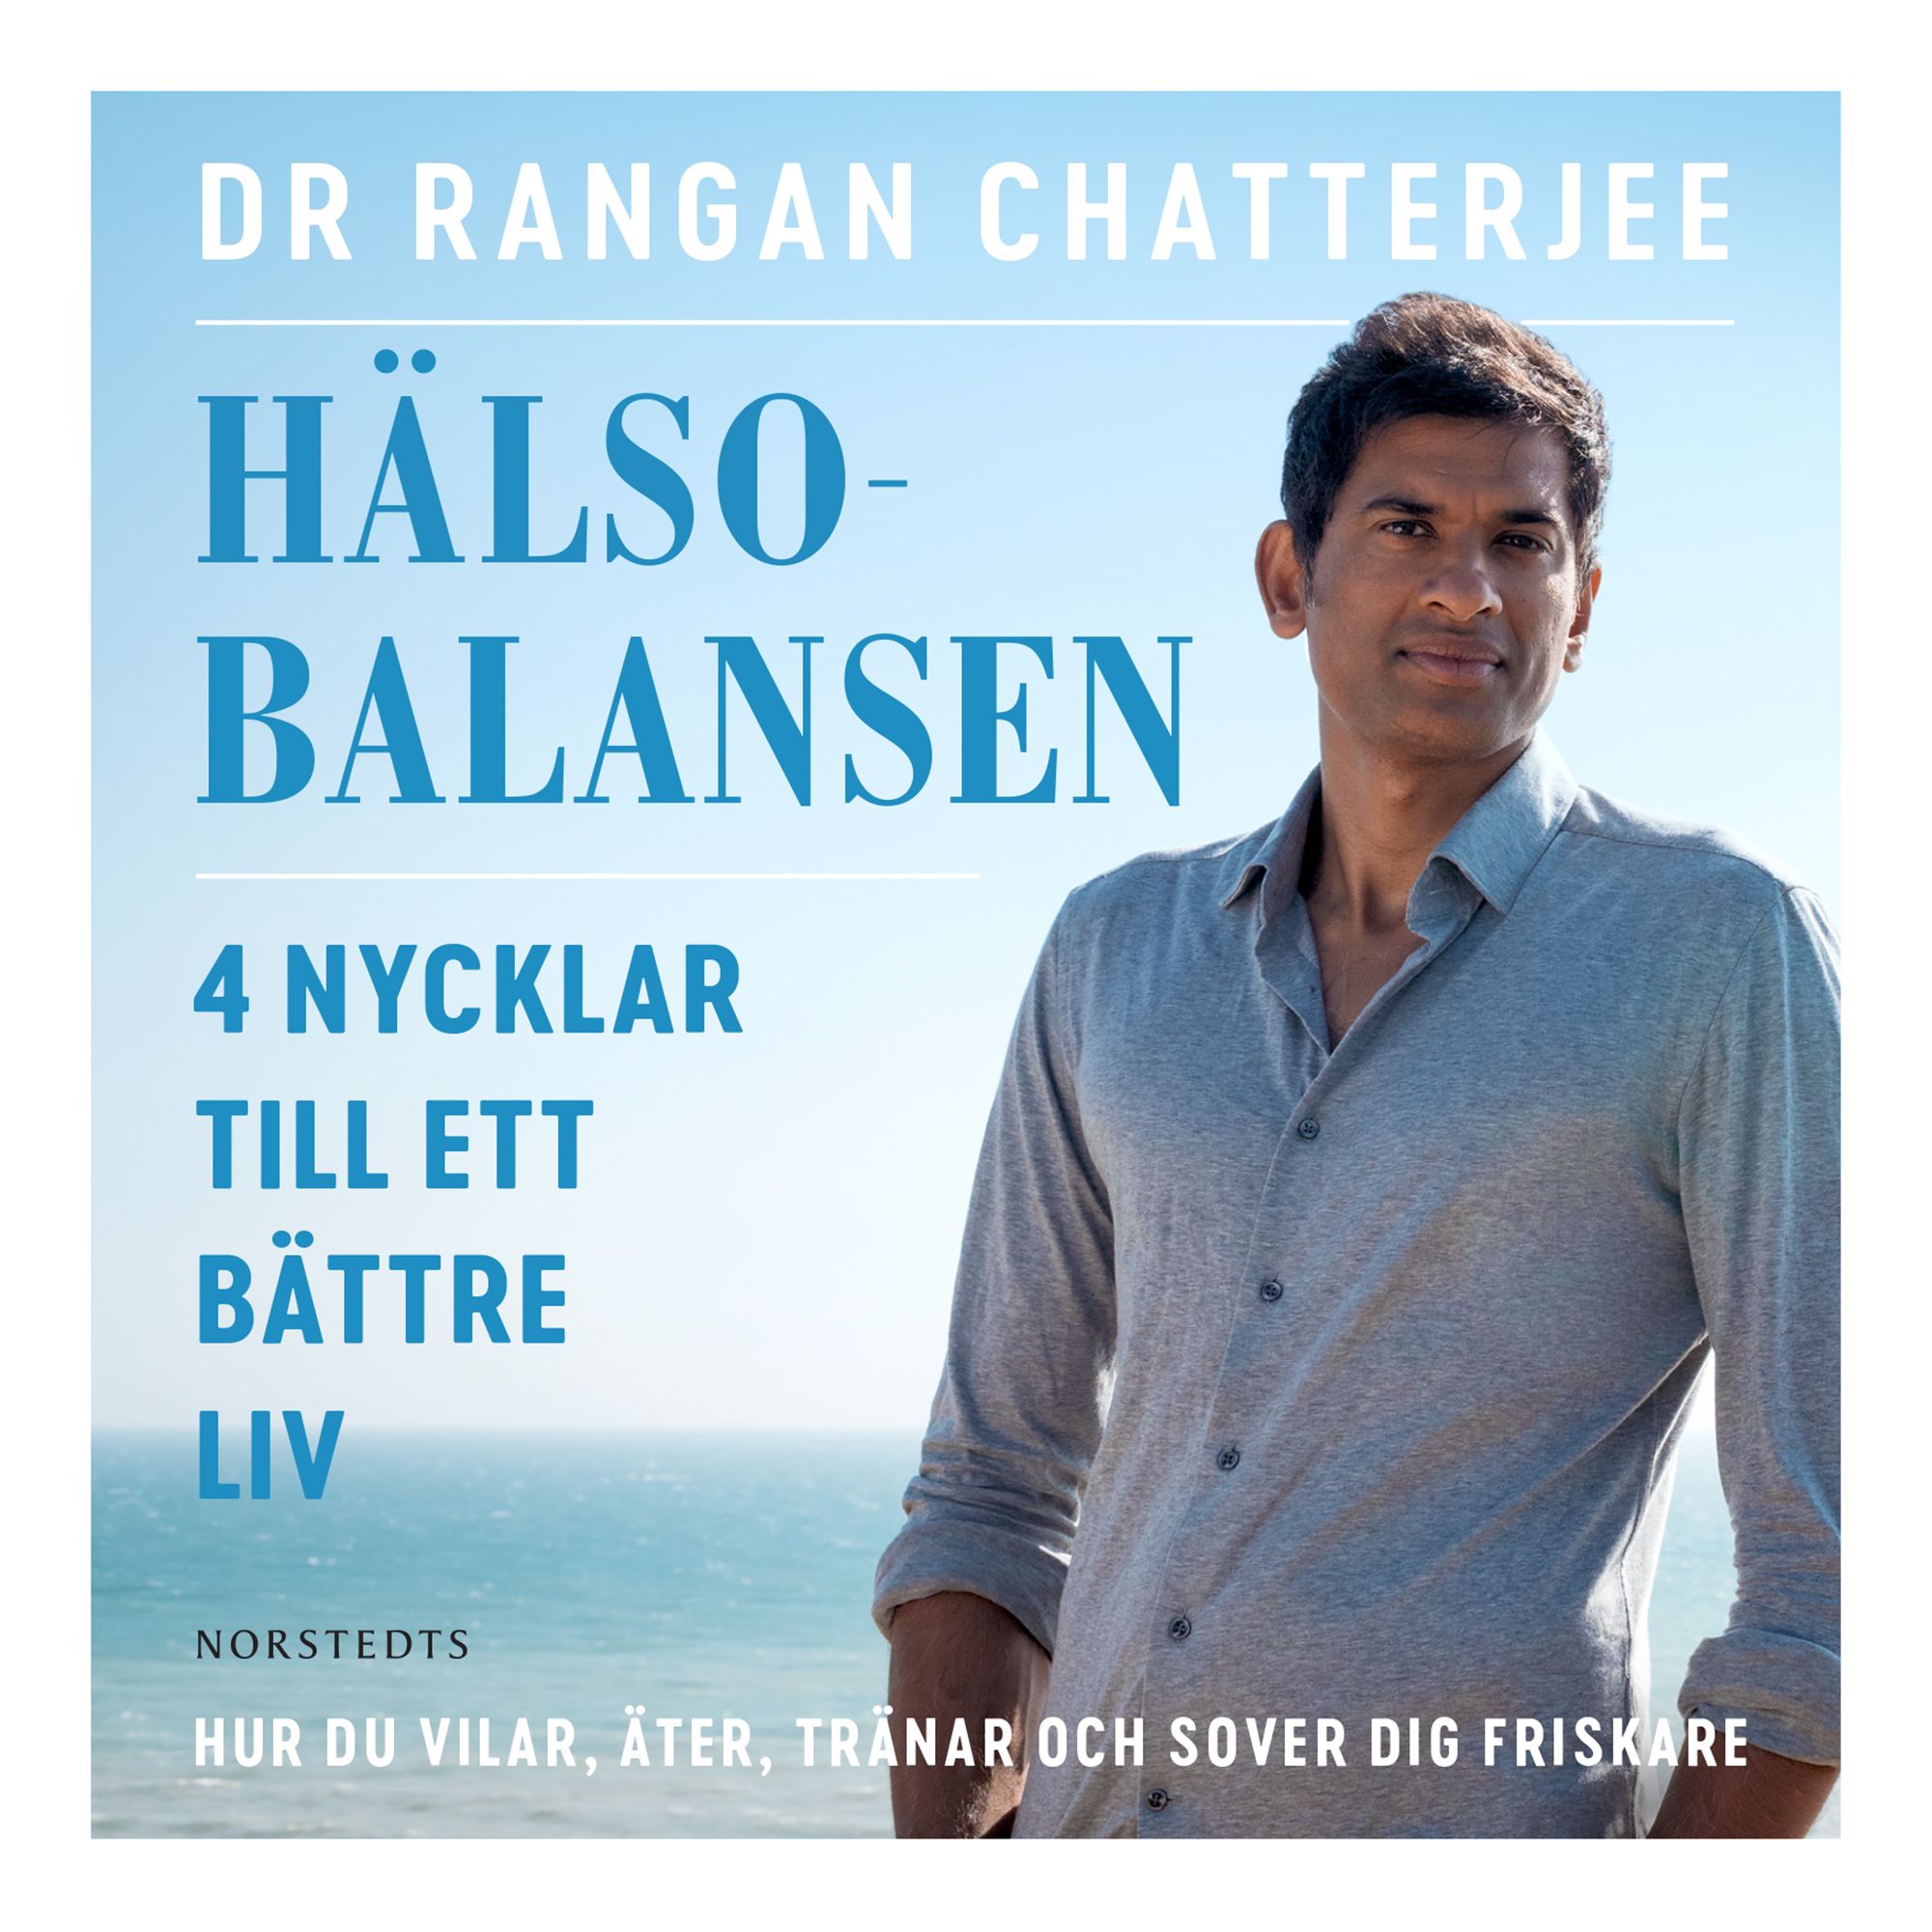 Hälsobalansen : 4 nycklar till ett bättre liv - hur du vilar, äter, tränar och sover dig friskare, audiobook by Rangan Chatterjee